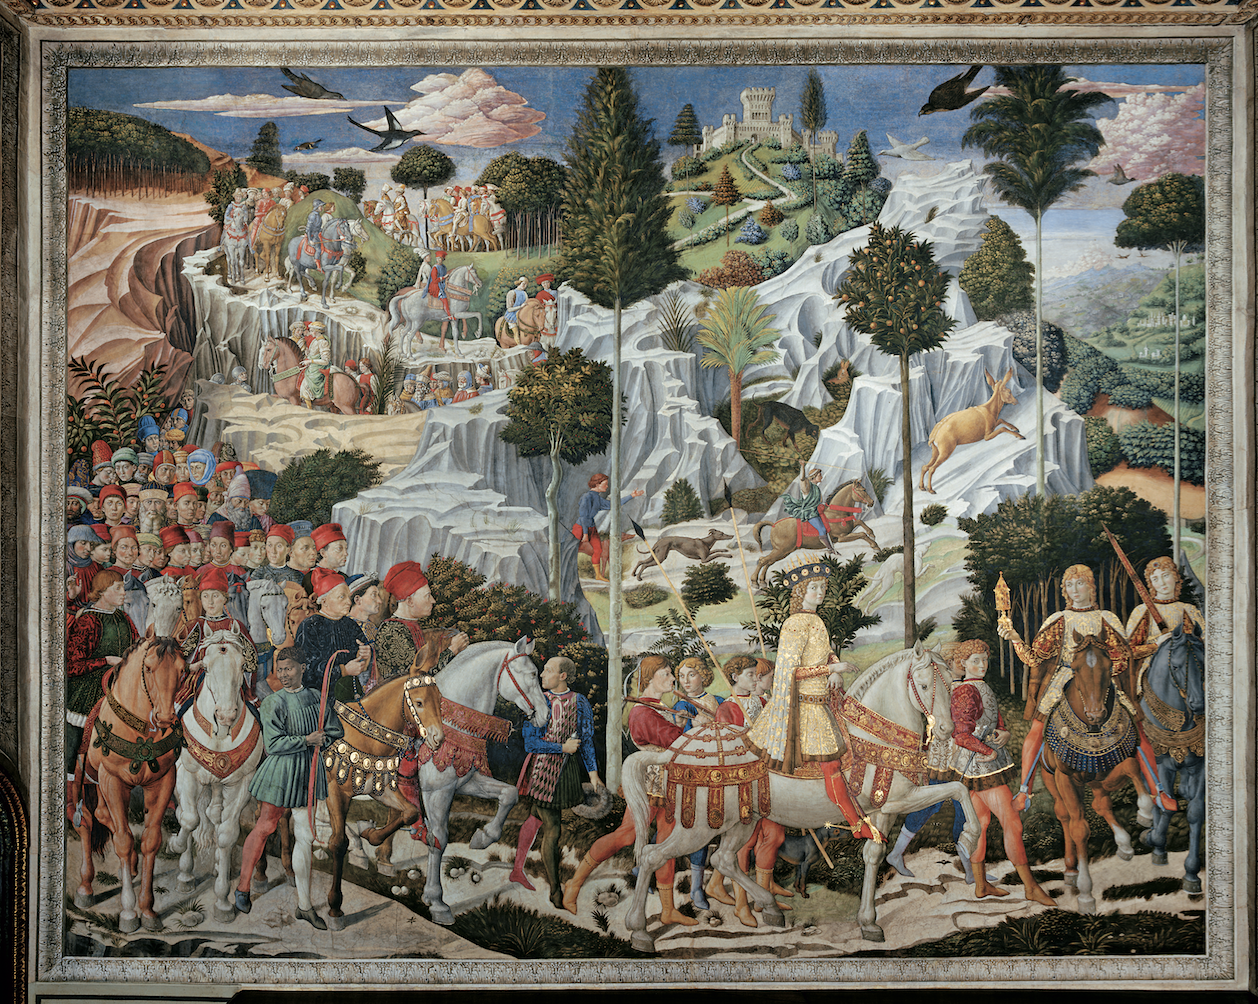 enozzo Gozzoli’s Procession of the Magi Fresco in the Medici Chapel